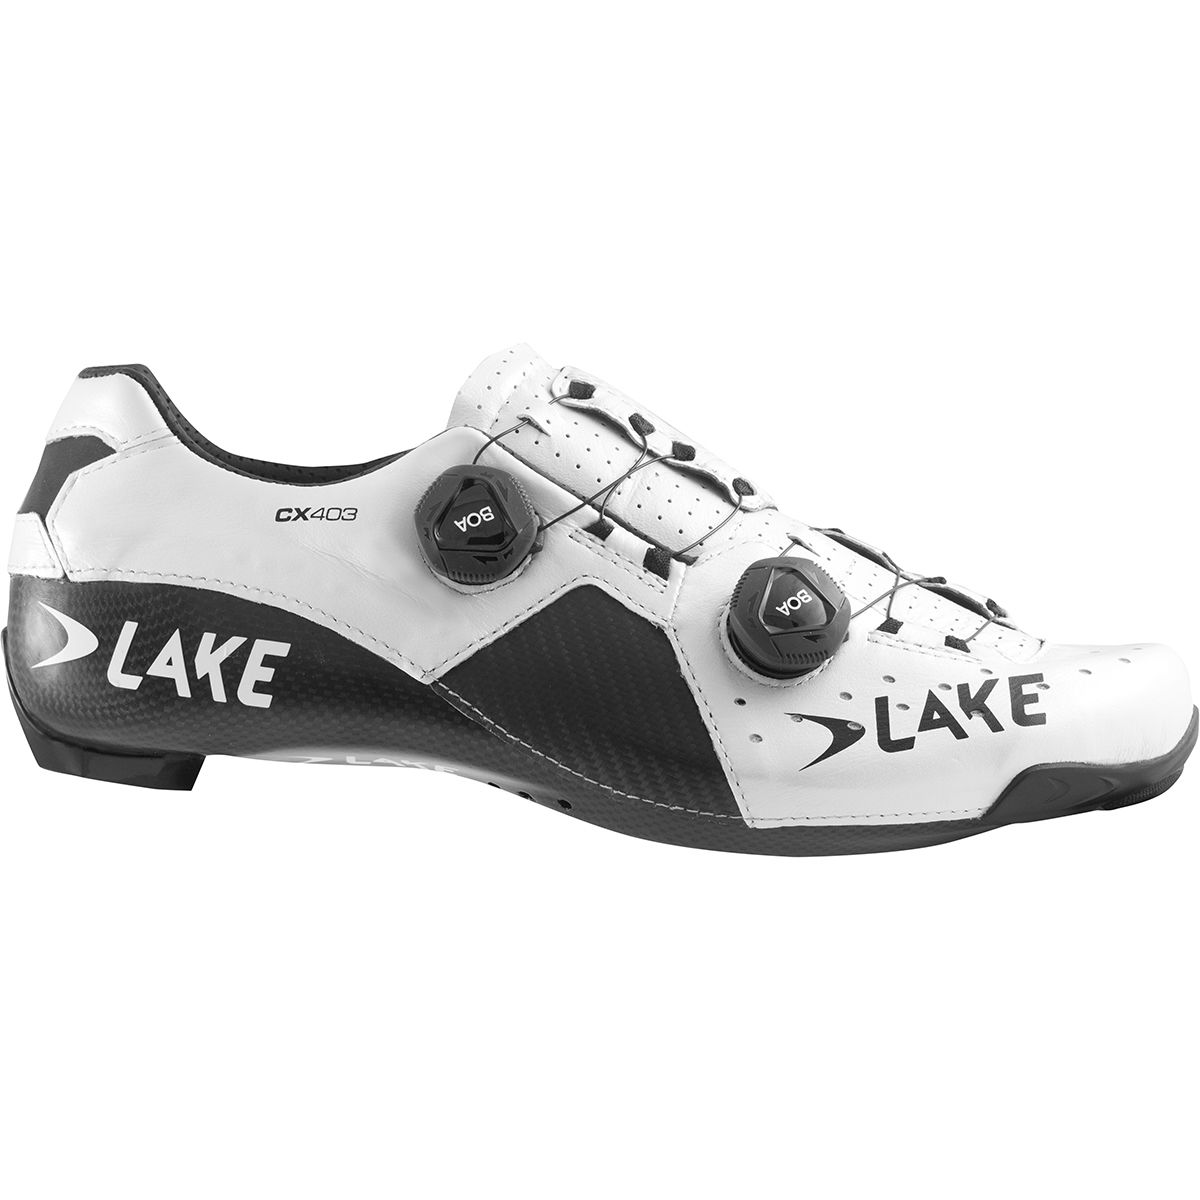 Lake CX403 Wide Cycling Shoe - Men's White/Black, 39.5